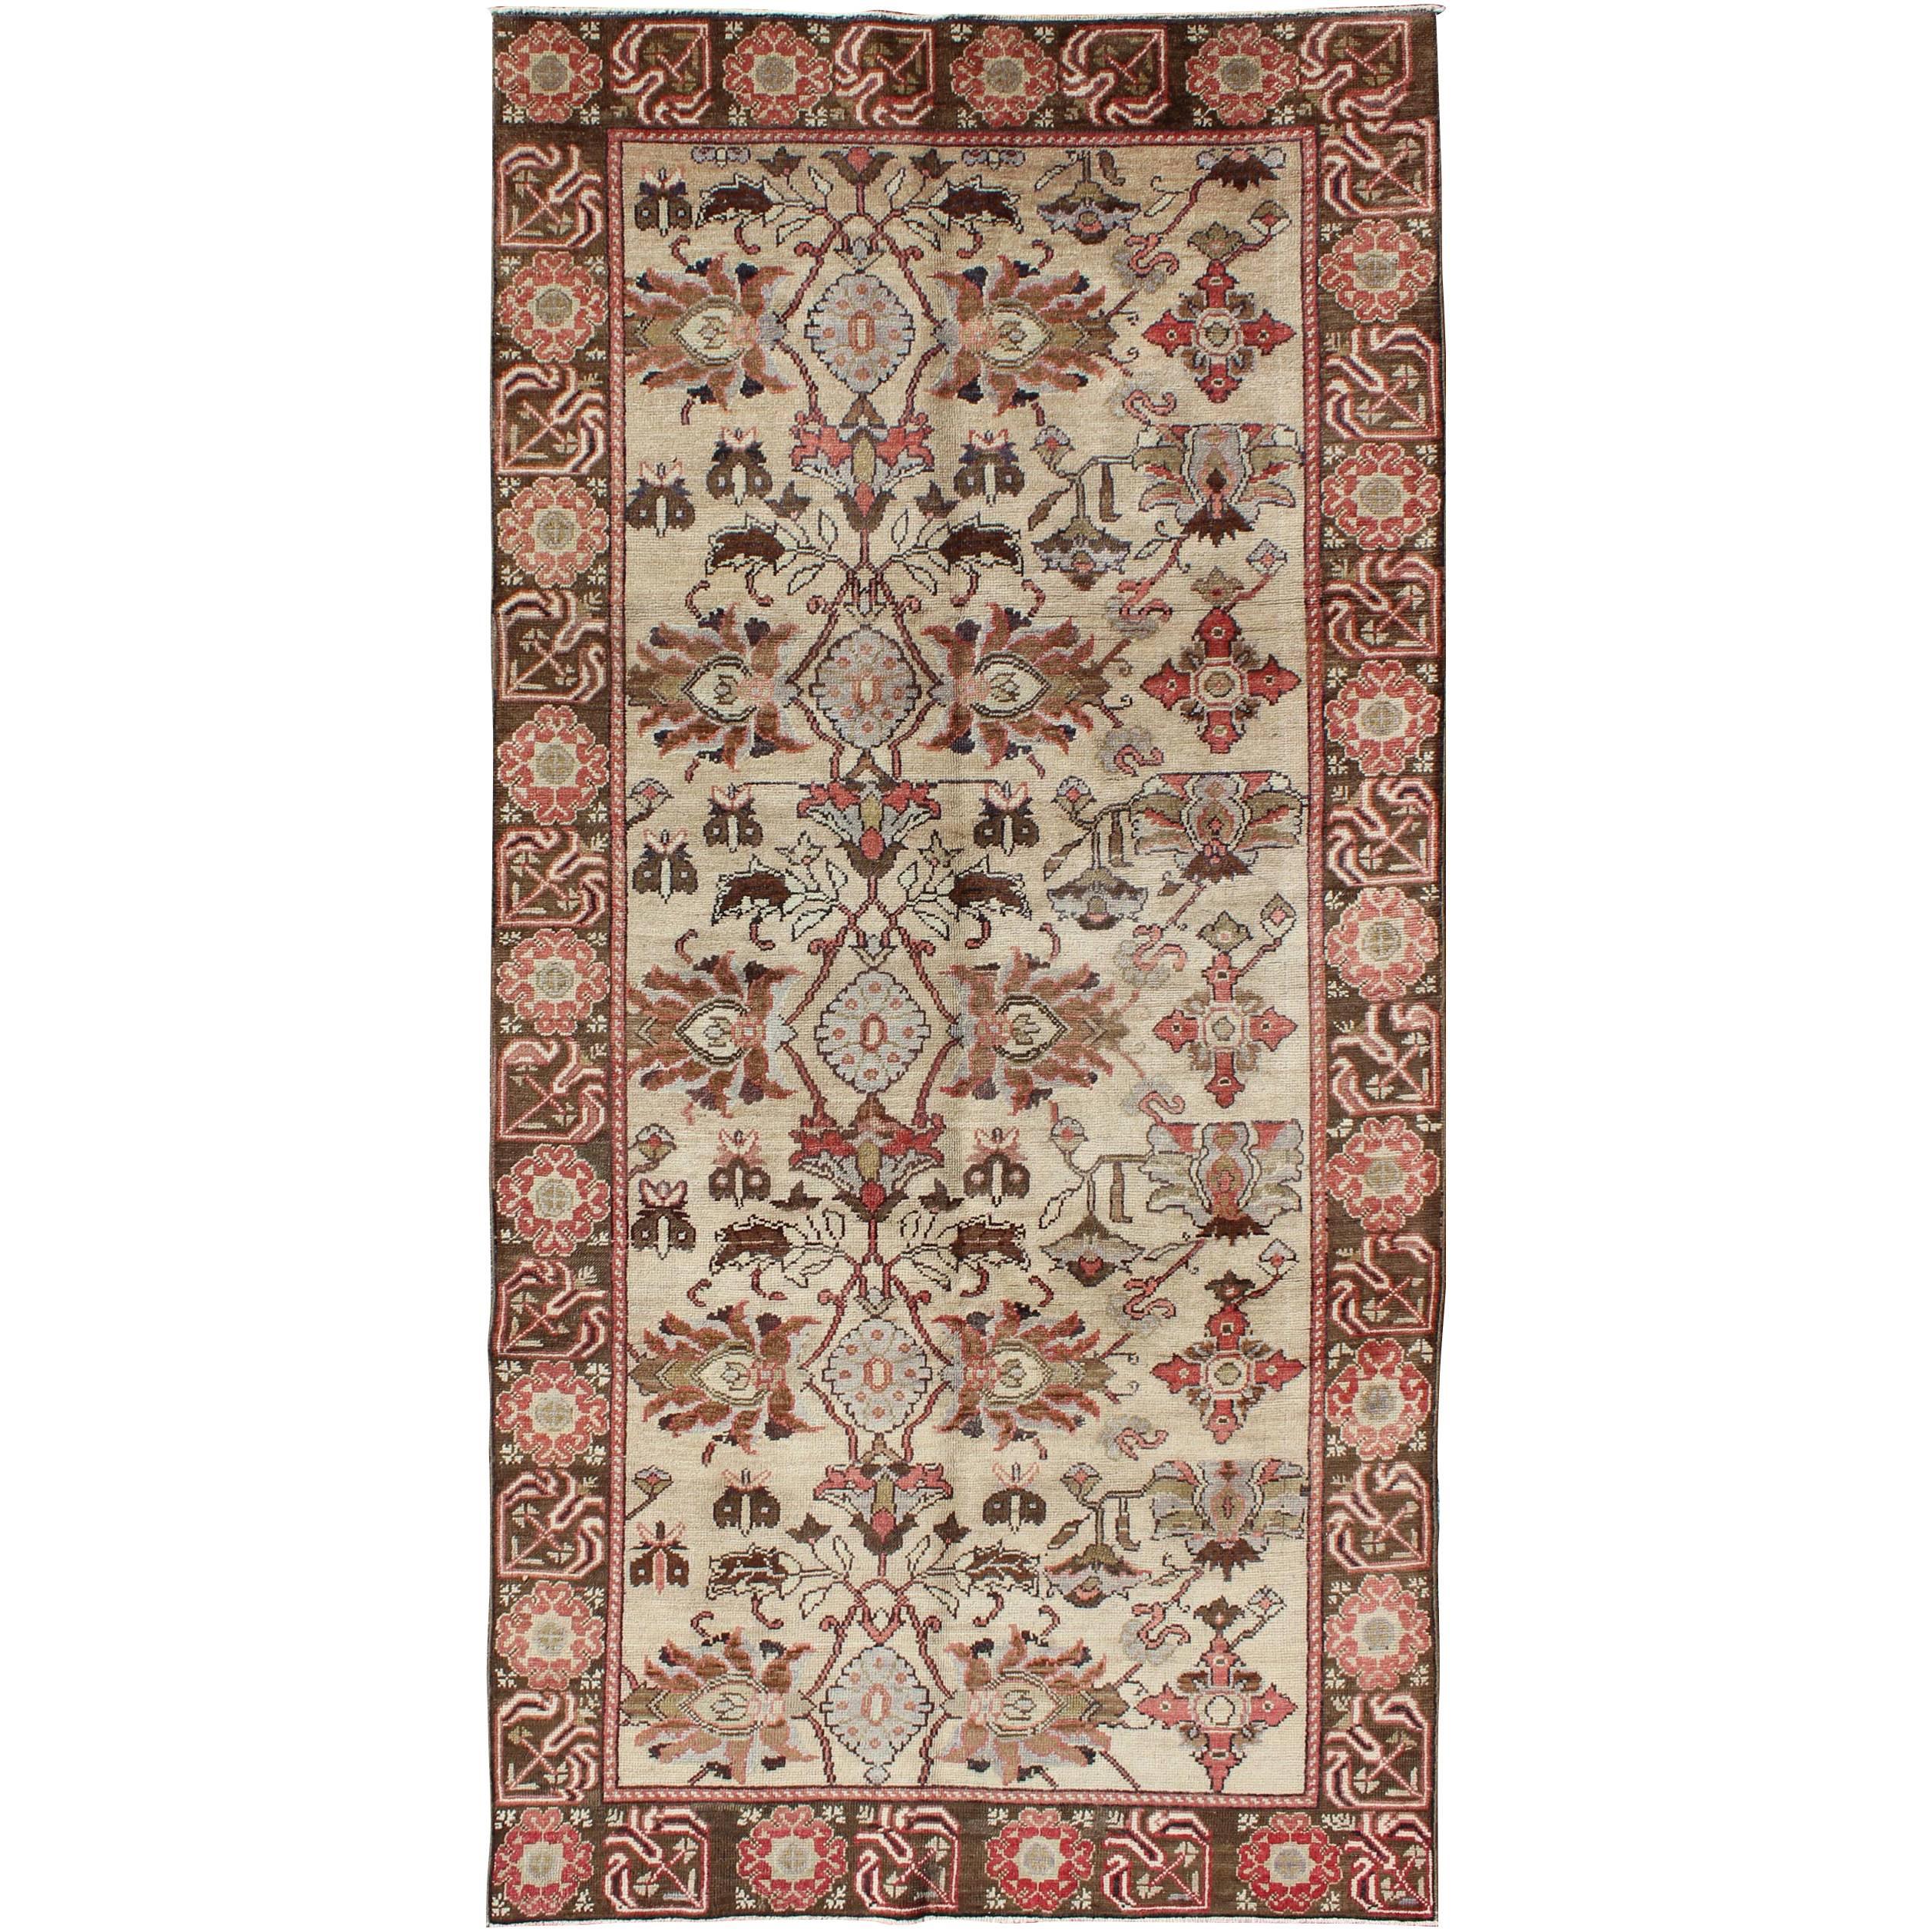 Vintage- Oushak-Teppich aus der Türkei mit floralem Muster in Elfenbein, Braun und Rot